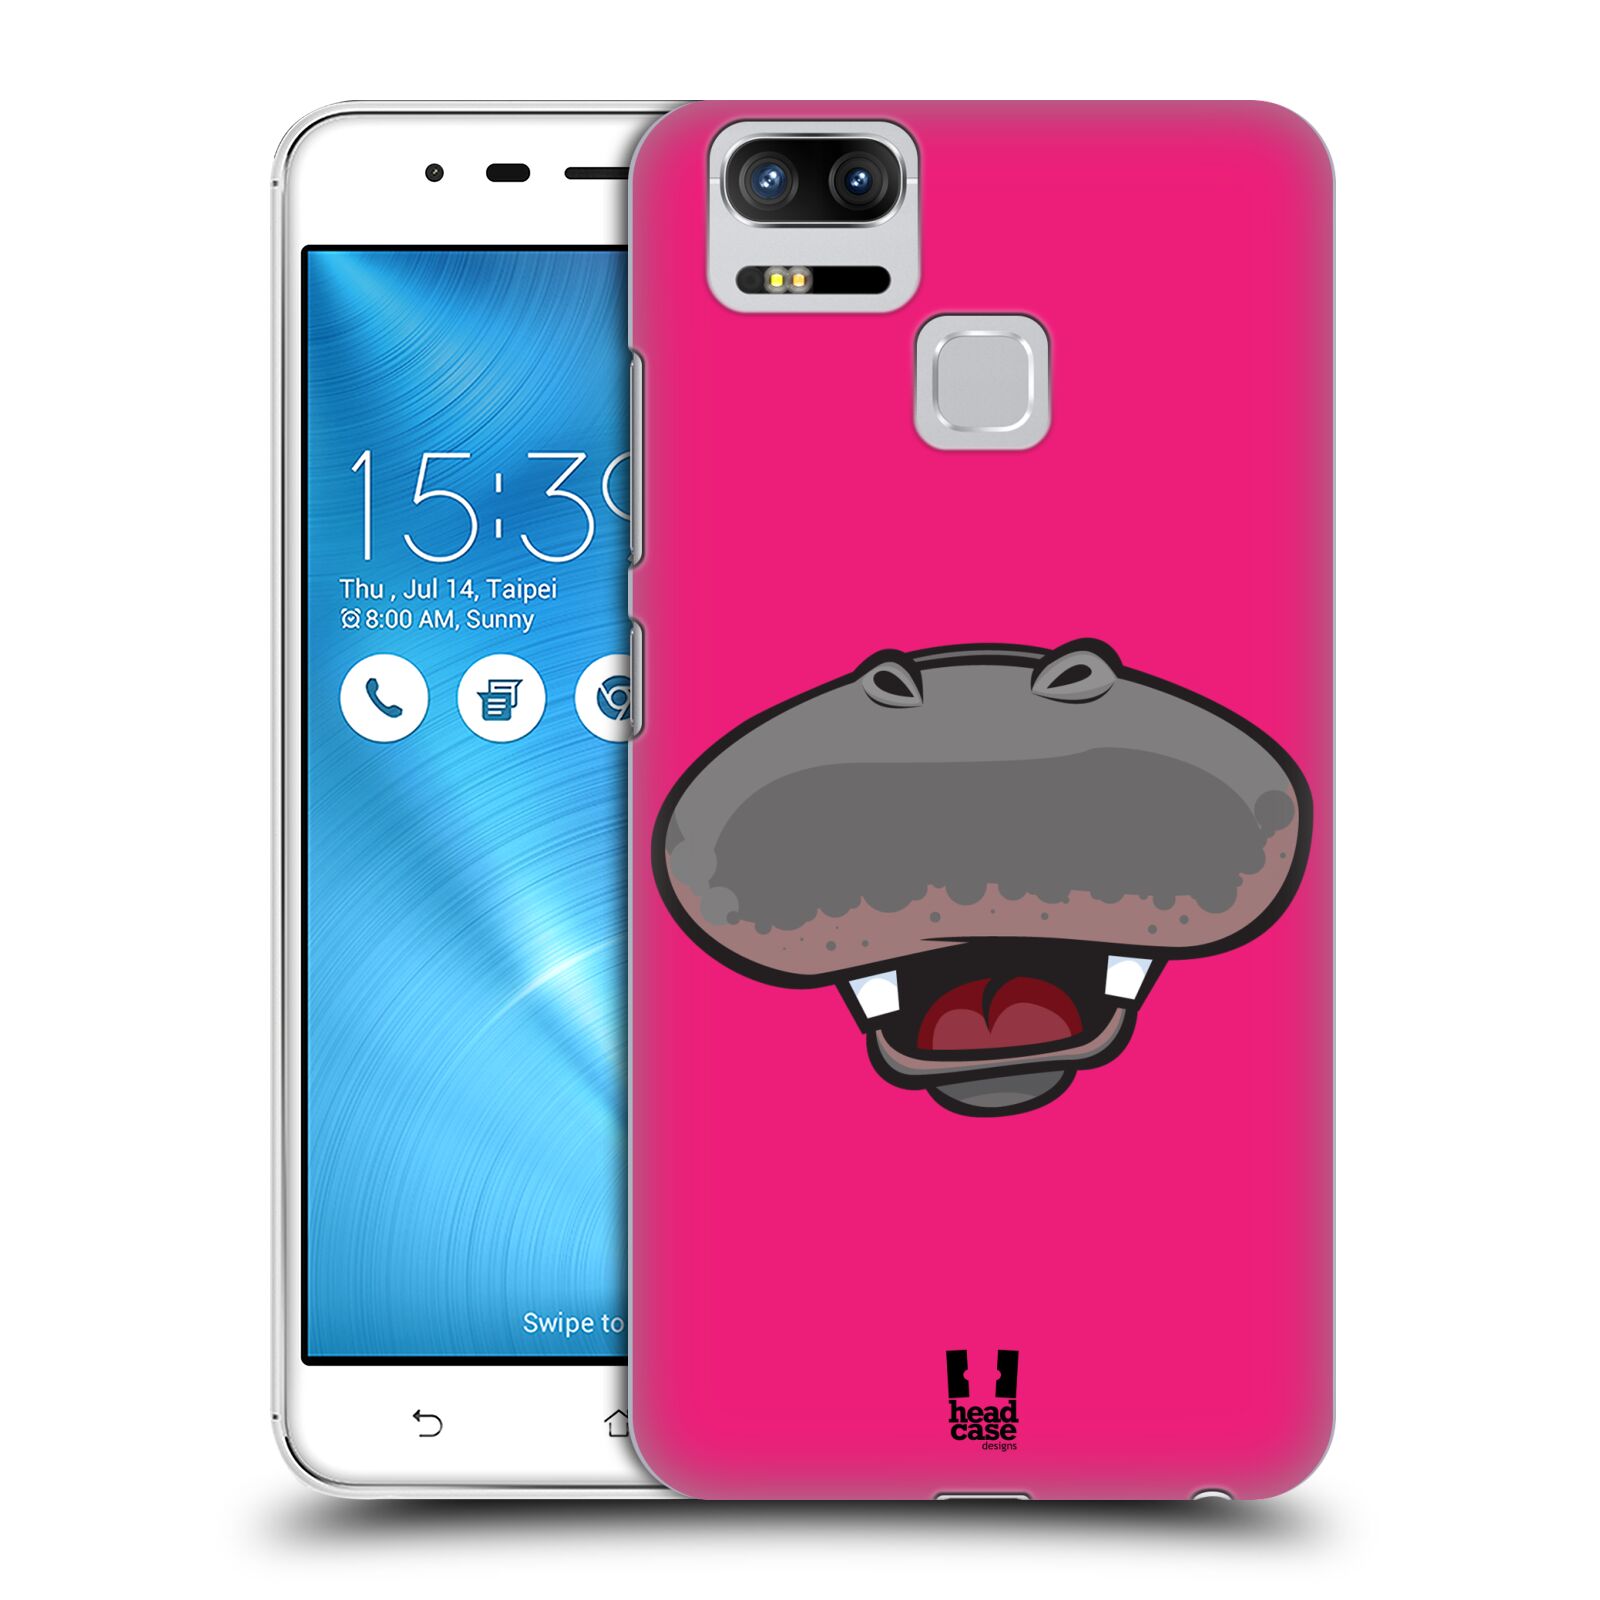 HEAD CASE plastový obal na mobil Asus Zenfone 3 Zoom ZE553KL vzor Zvířecí úsměv hroch růžová